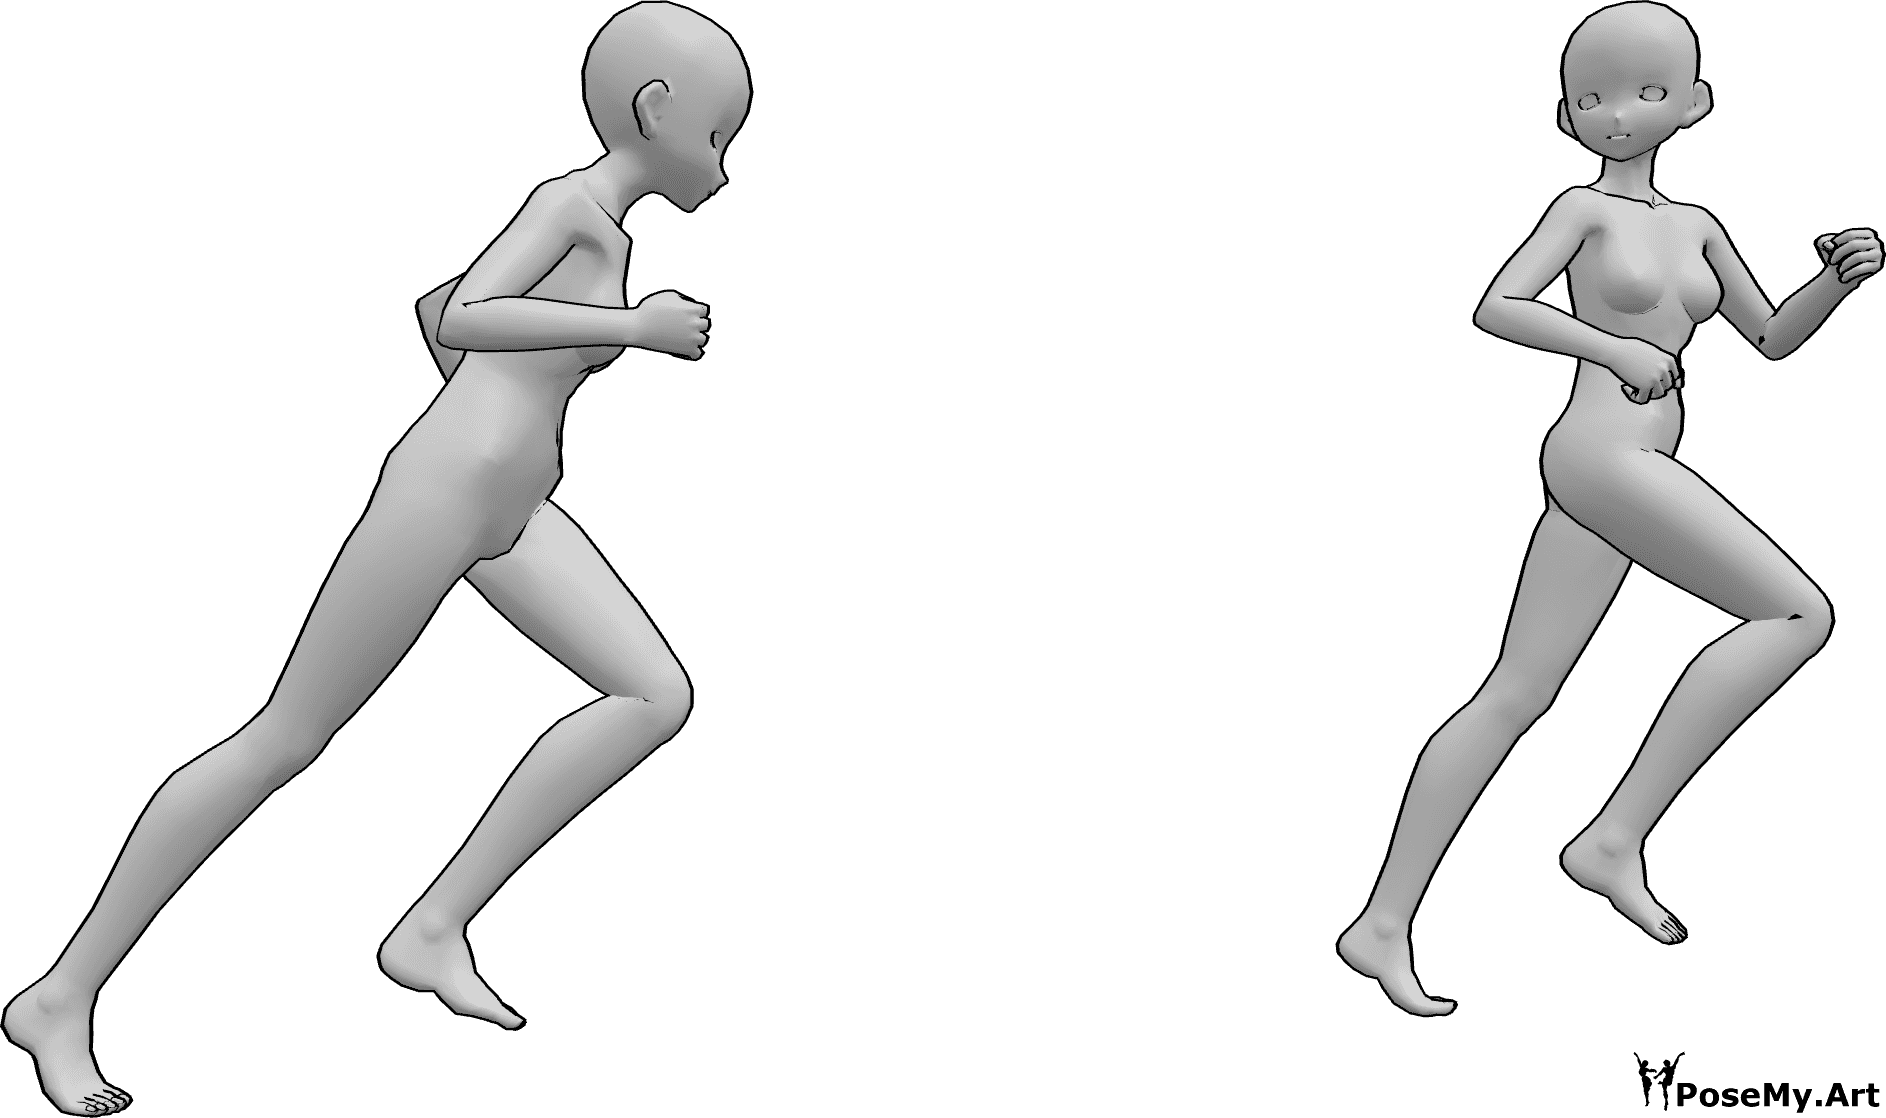 Référence des poses- Pose de course à pied et de poursuite d'un animal d'animation - Deux femmes animées courent, l'une poursuit l'autre, qui regarde en arrière tout en s'enfuyant.